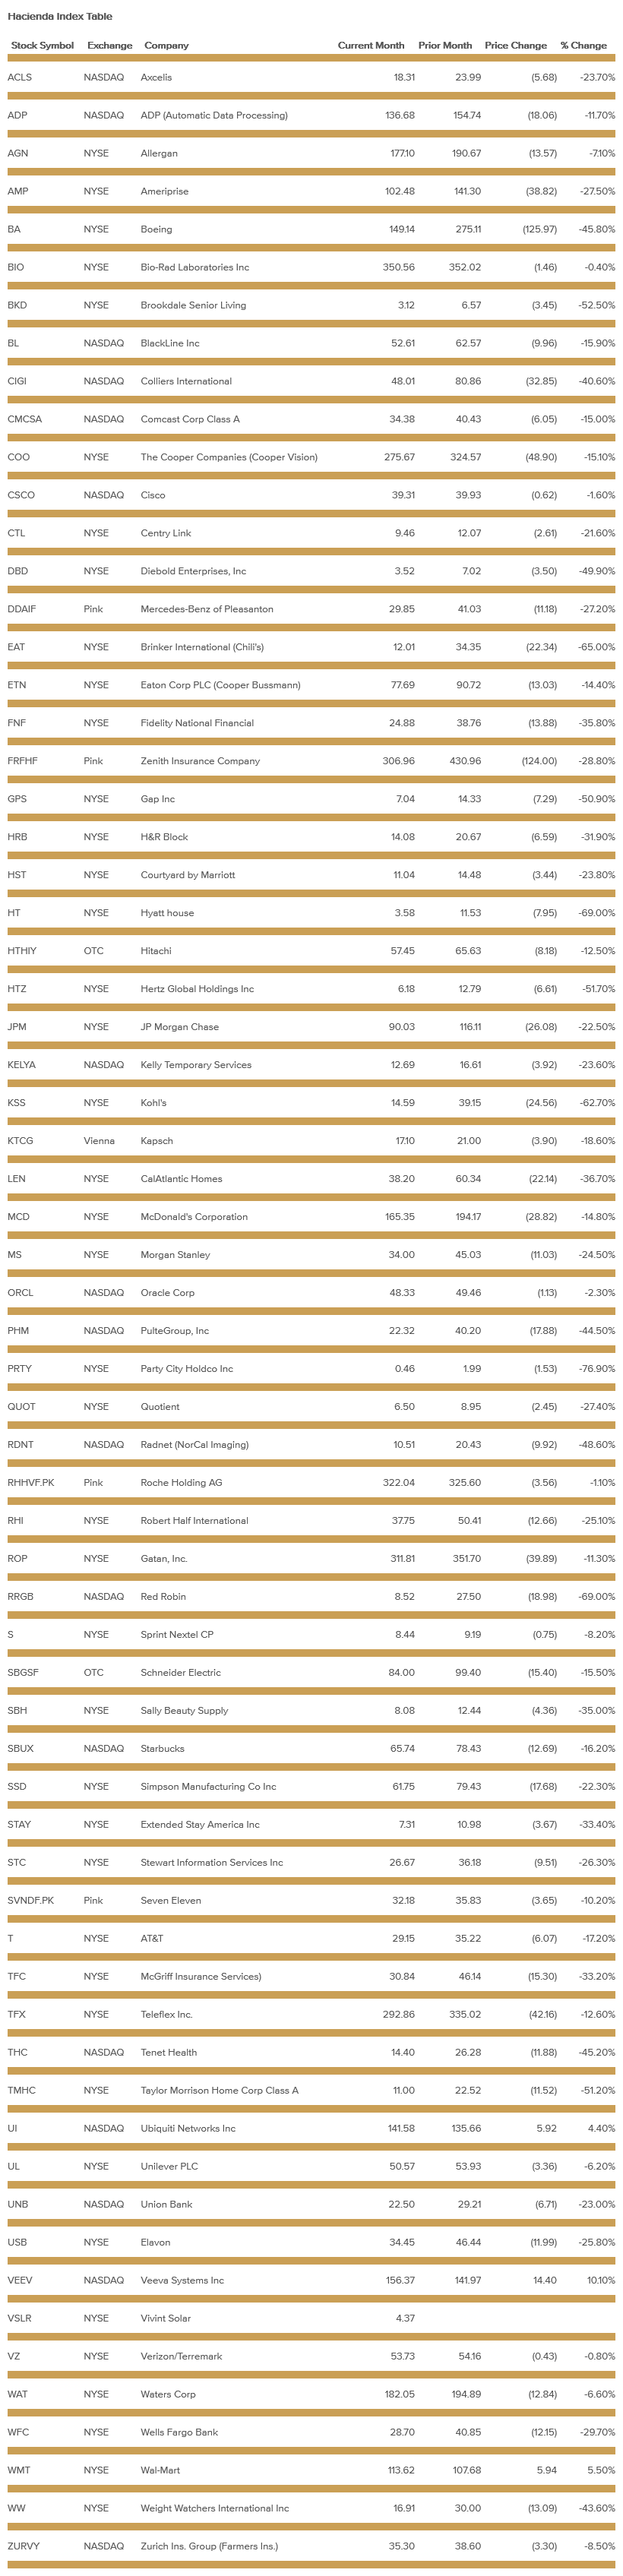 hacienda-index-table-april-2020.png